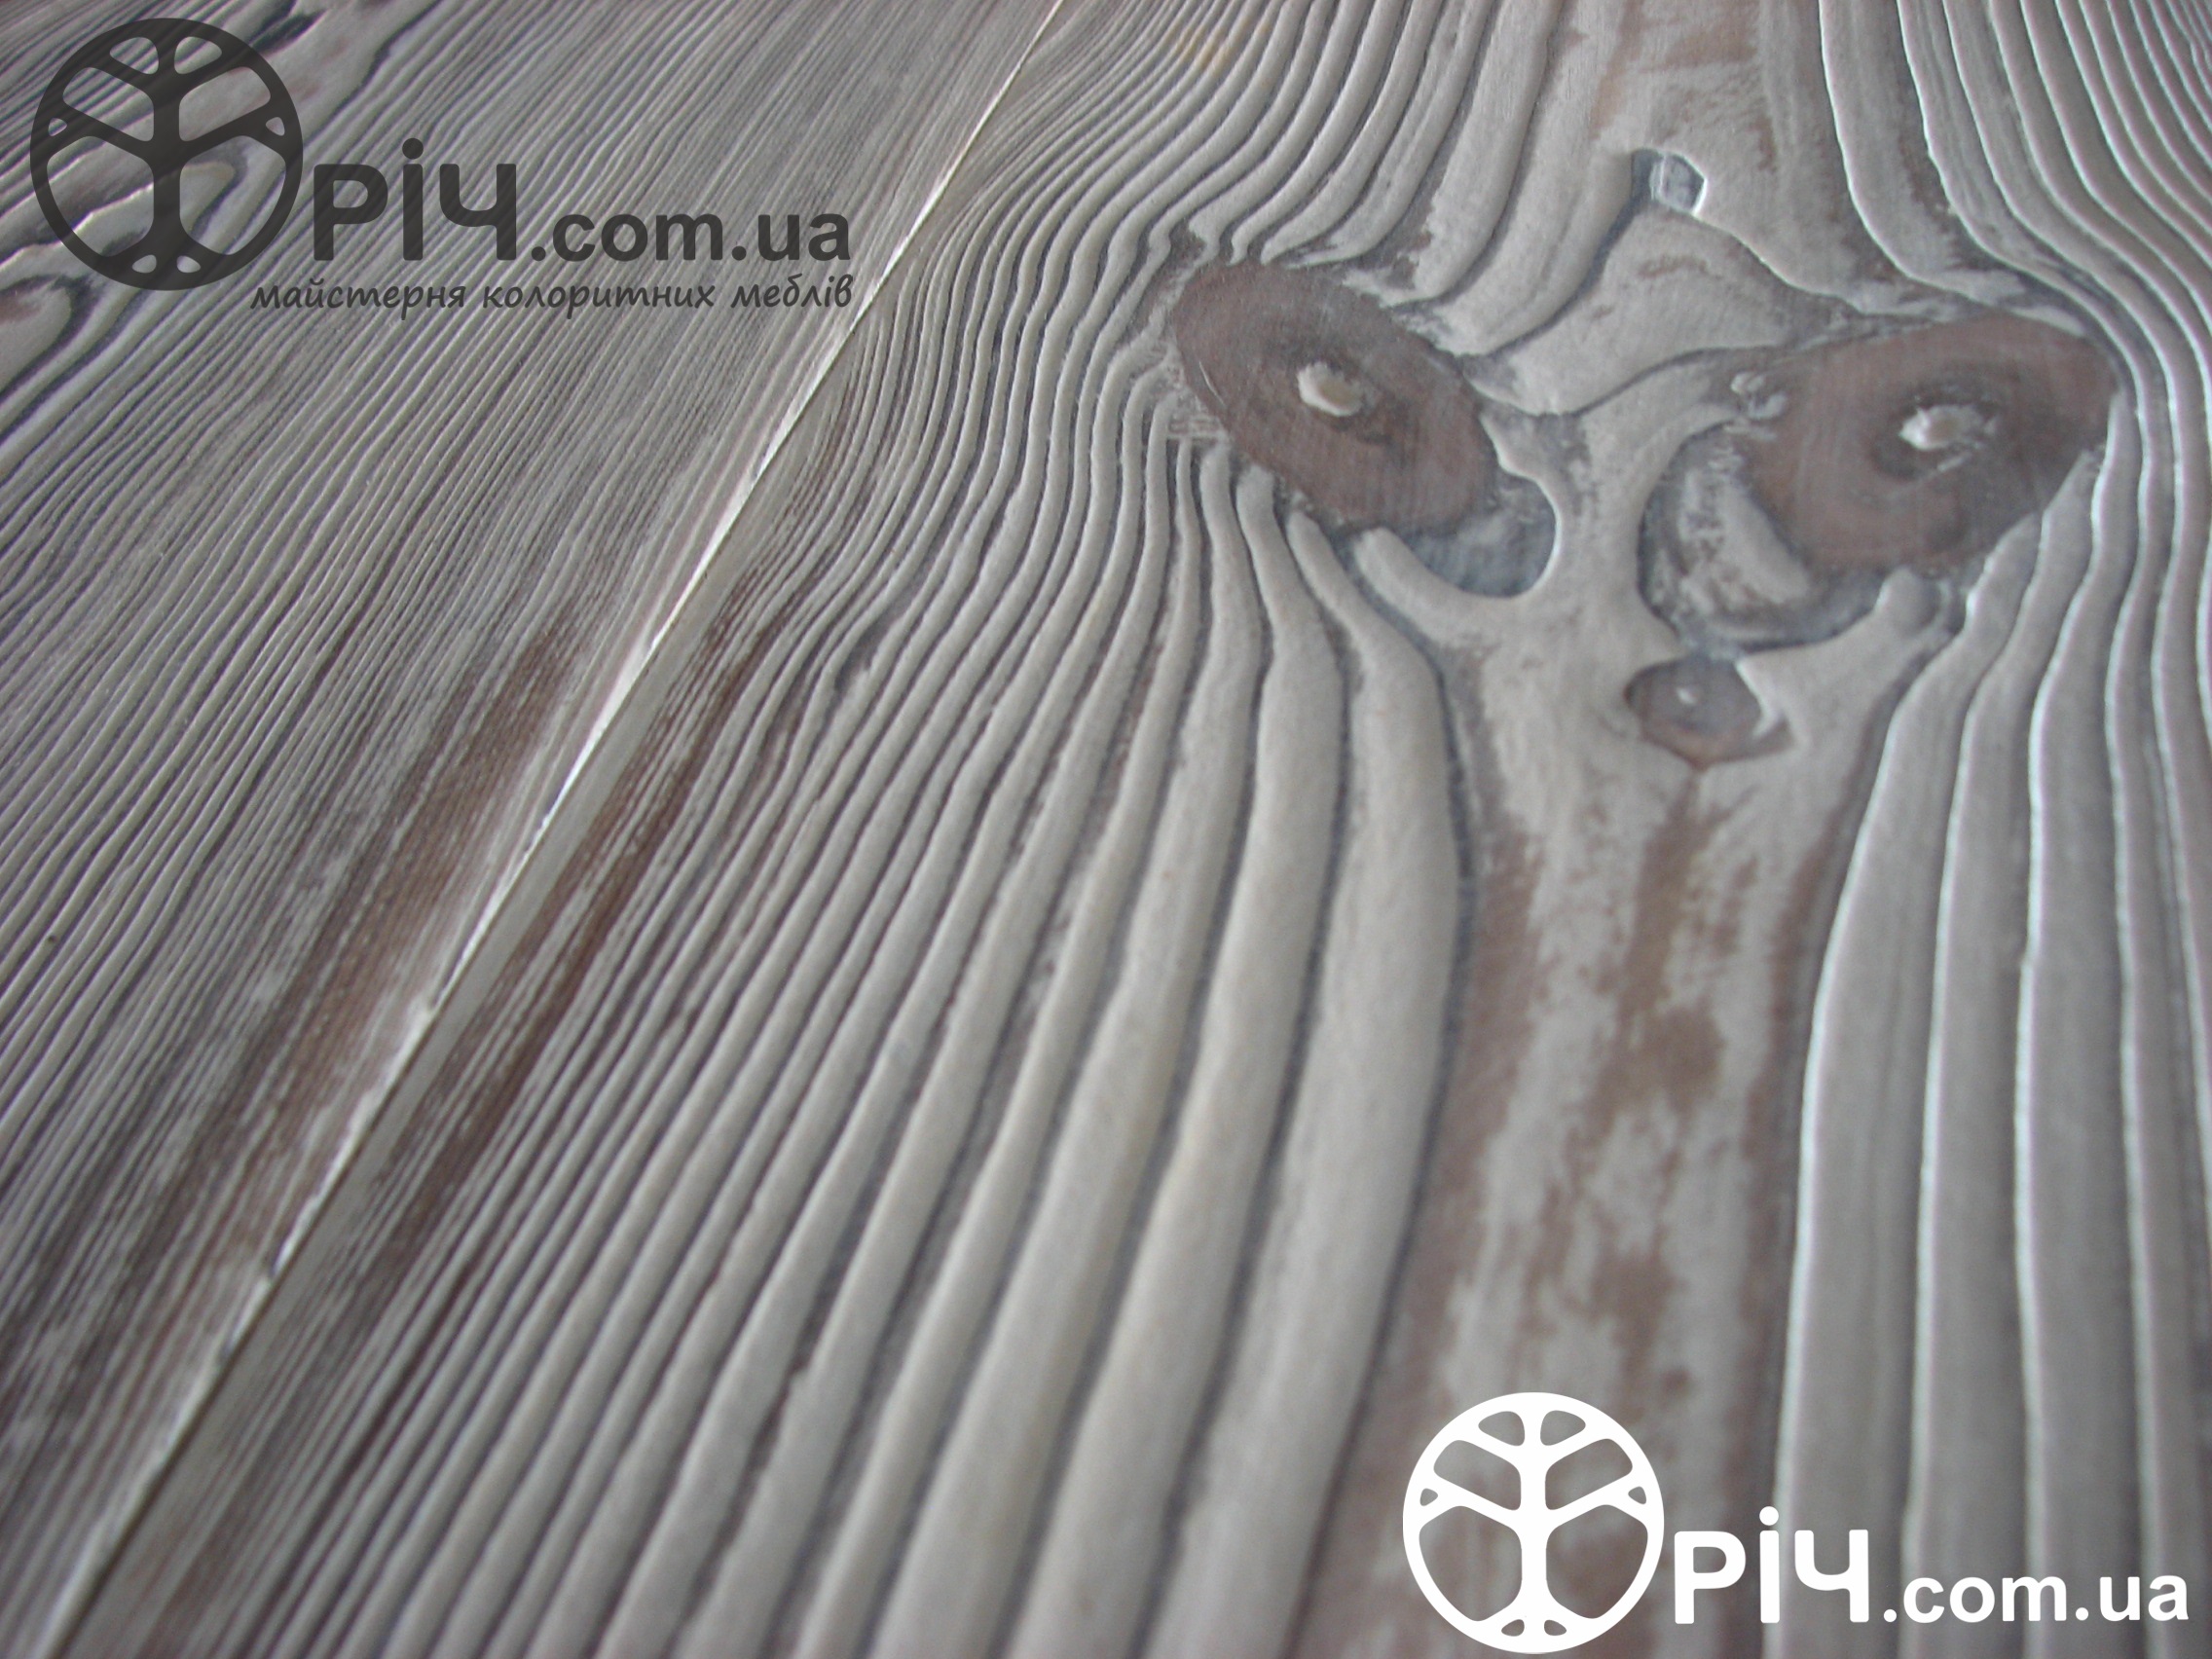 Цельно-деревянная мебель. Деревянный комод из дерева под старину, в стиле кантри, фактура натурального дерева.